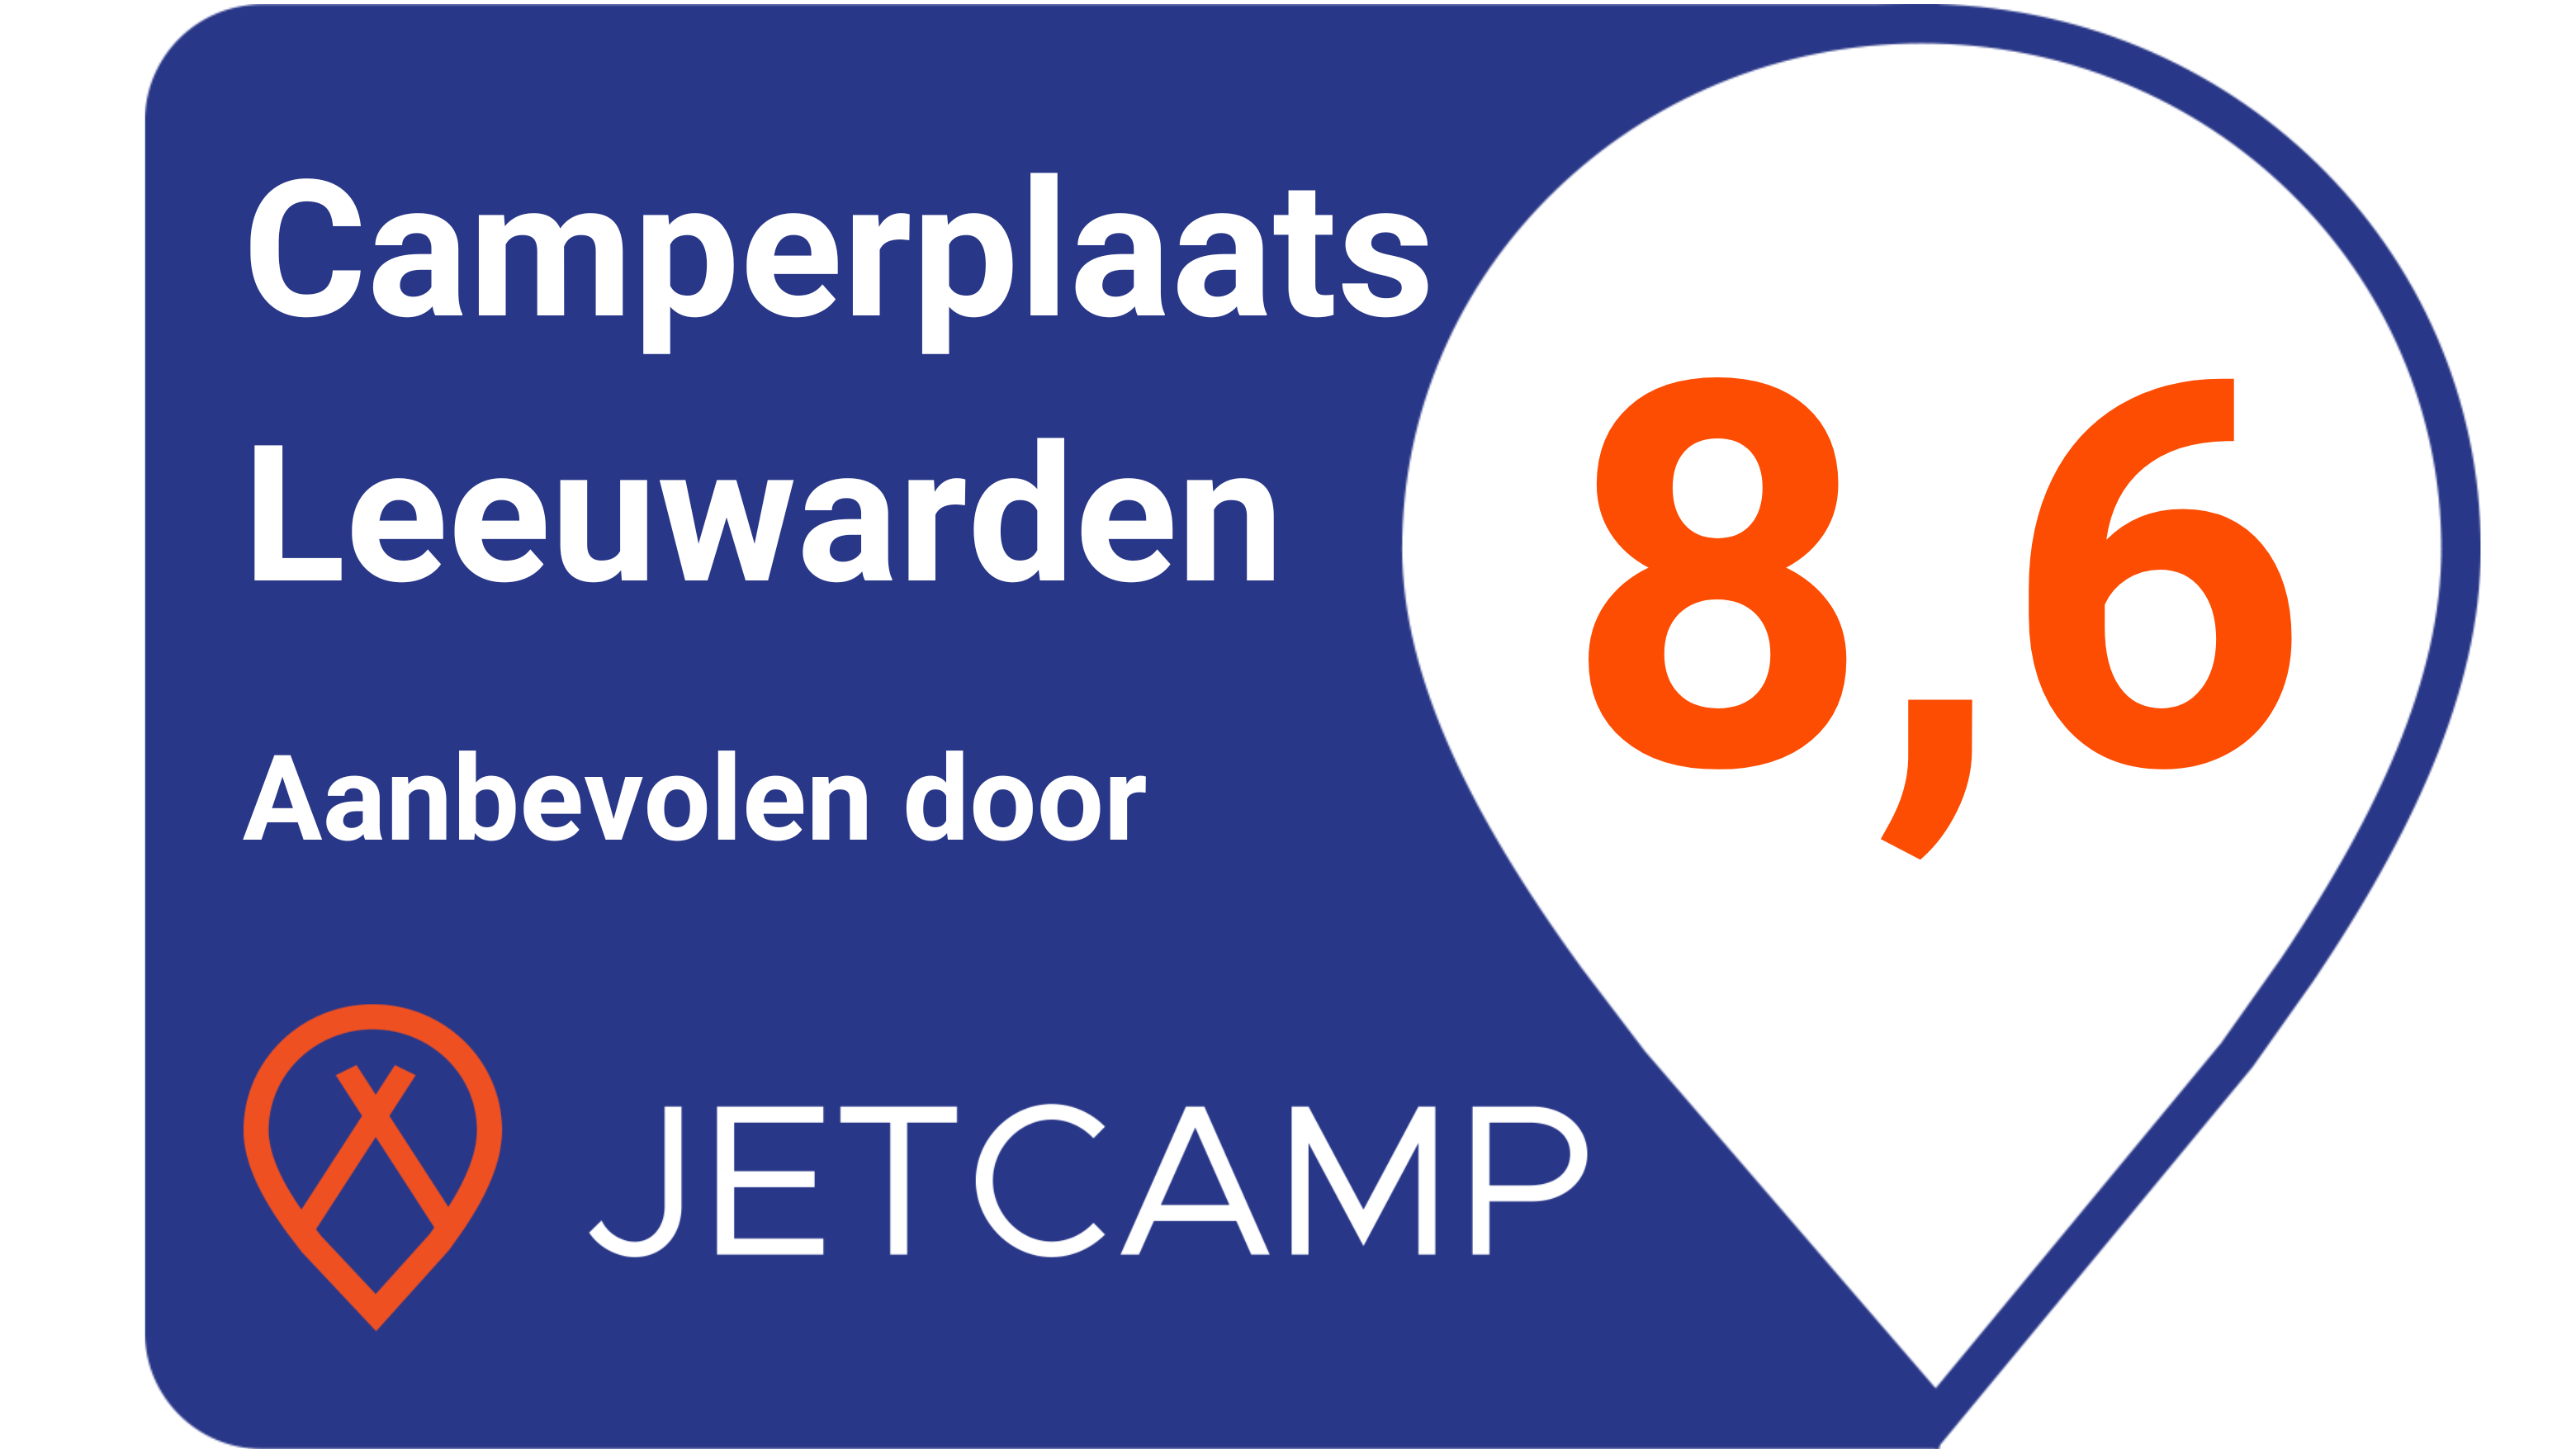 Jetcamp